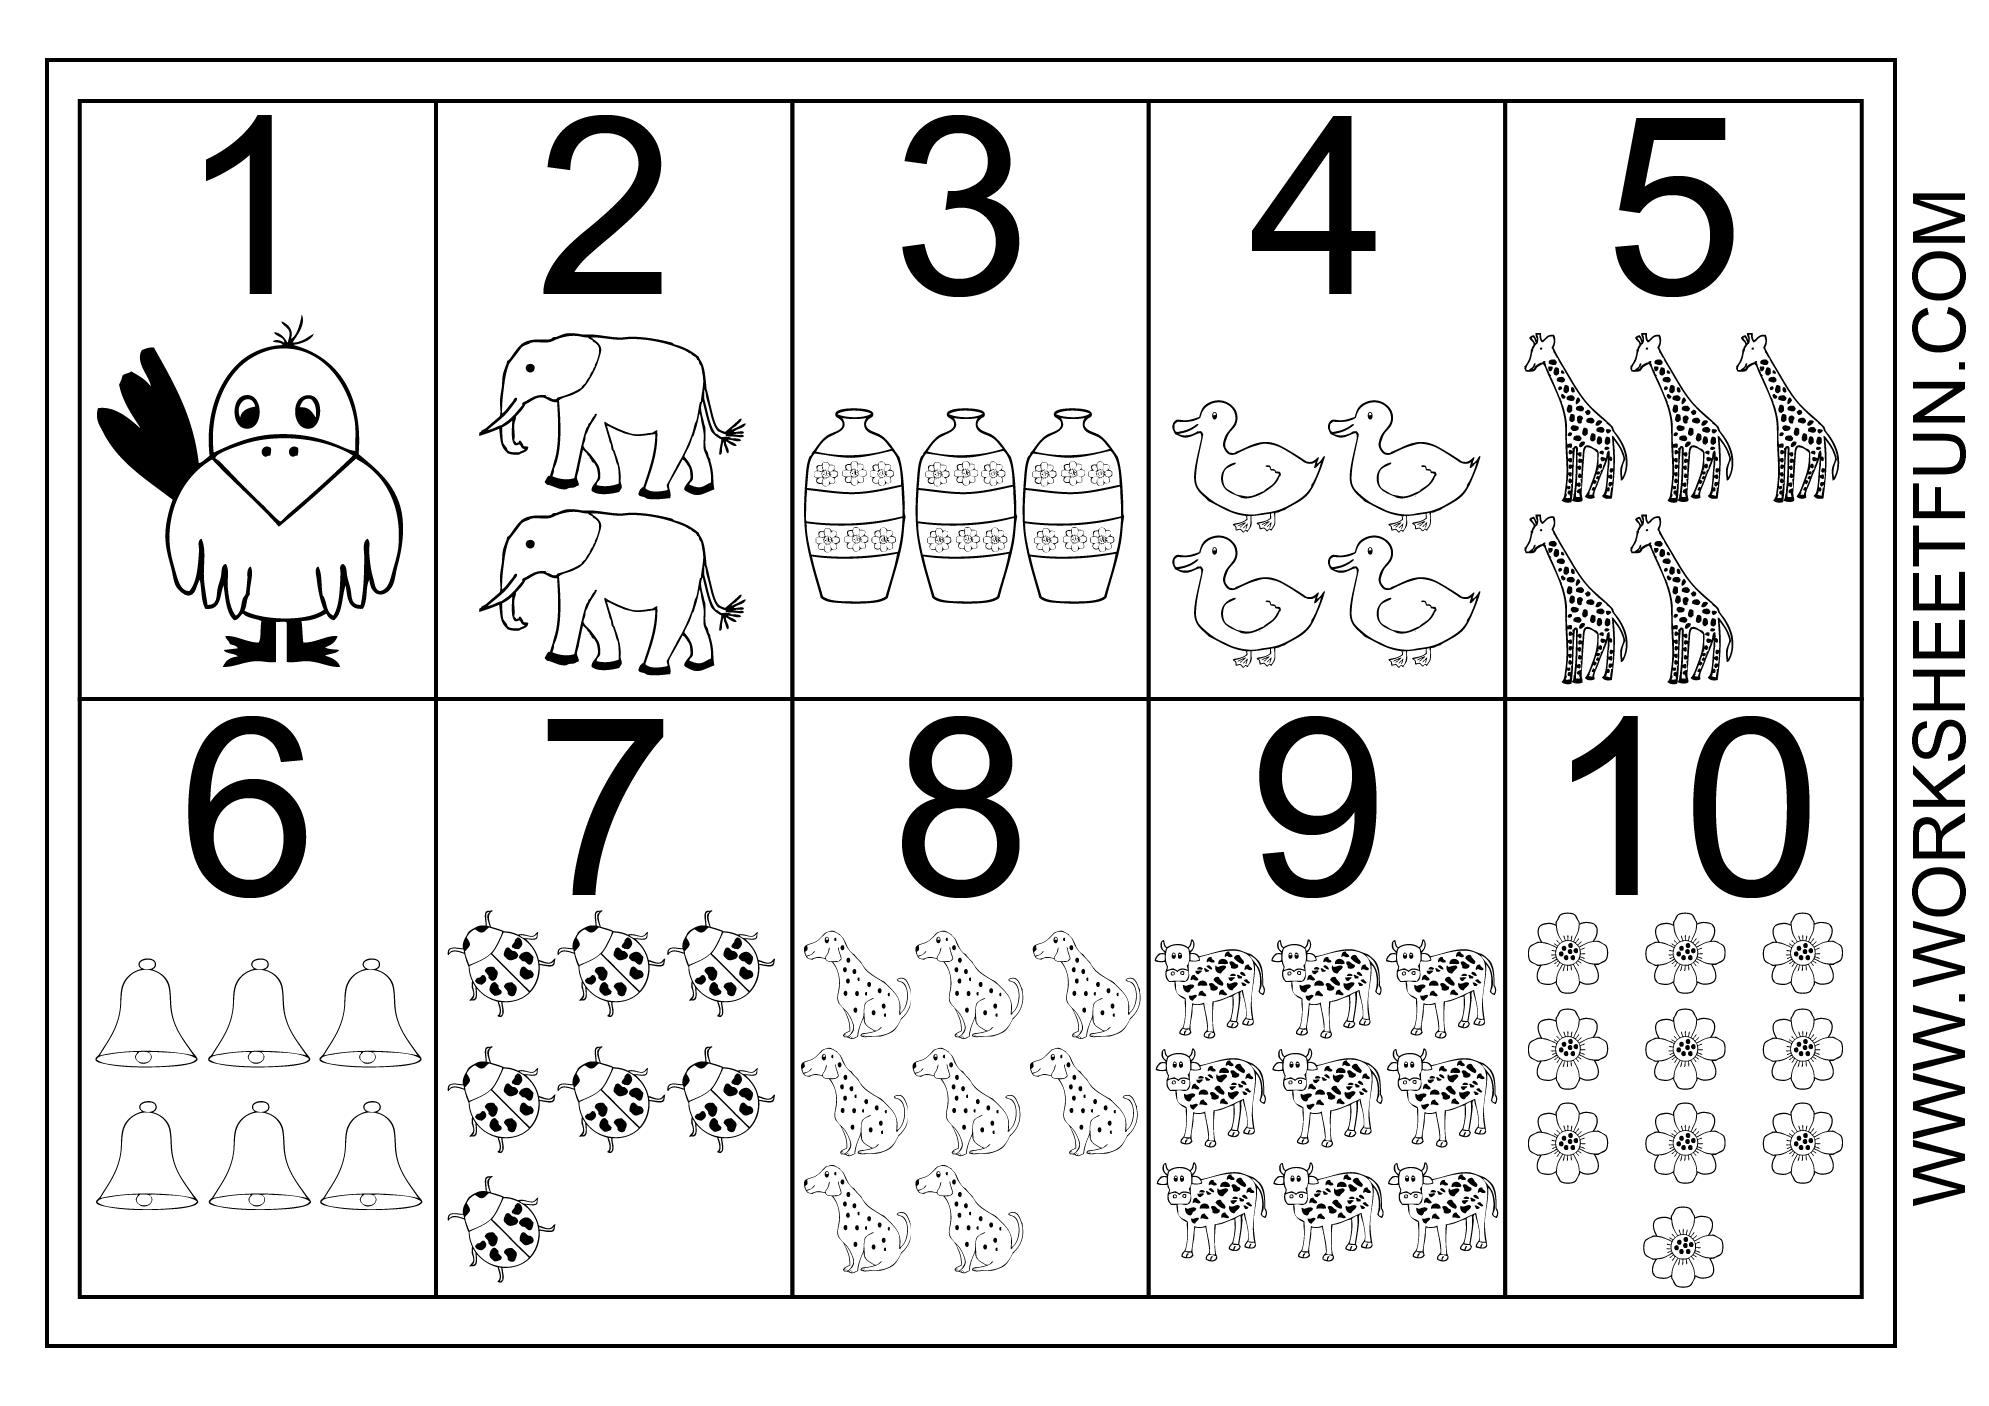 Preschool Number Worksheets 1 10 Image